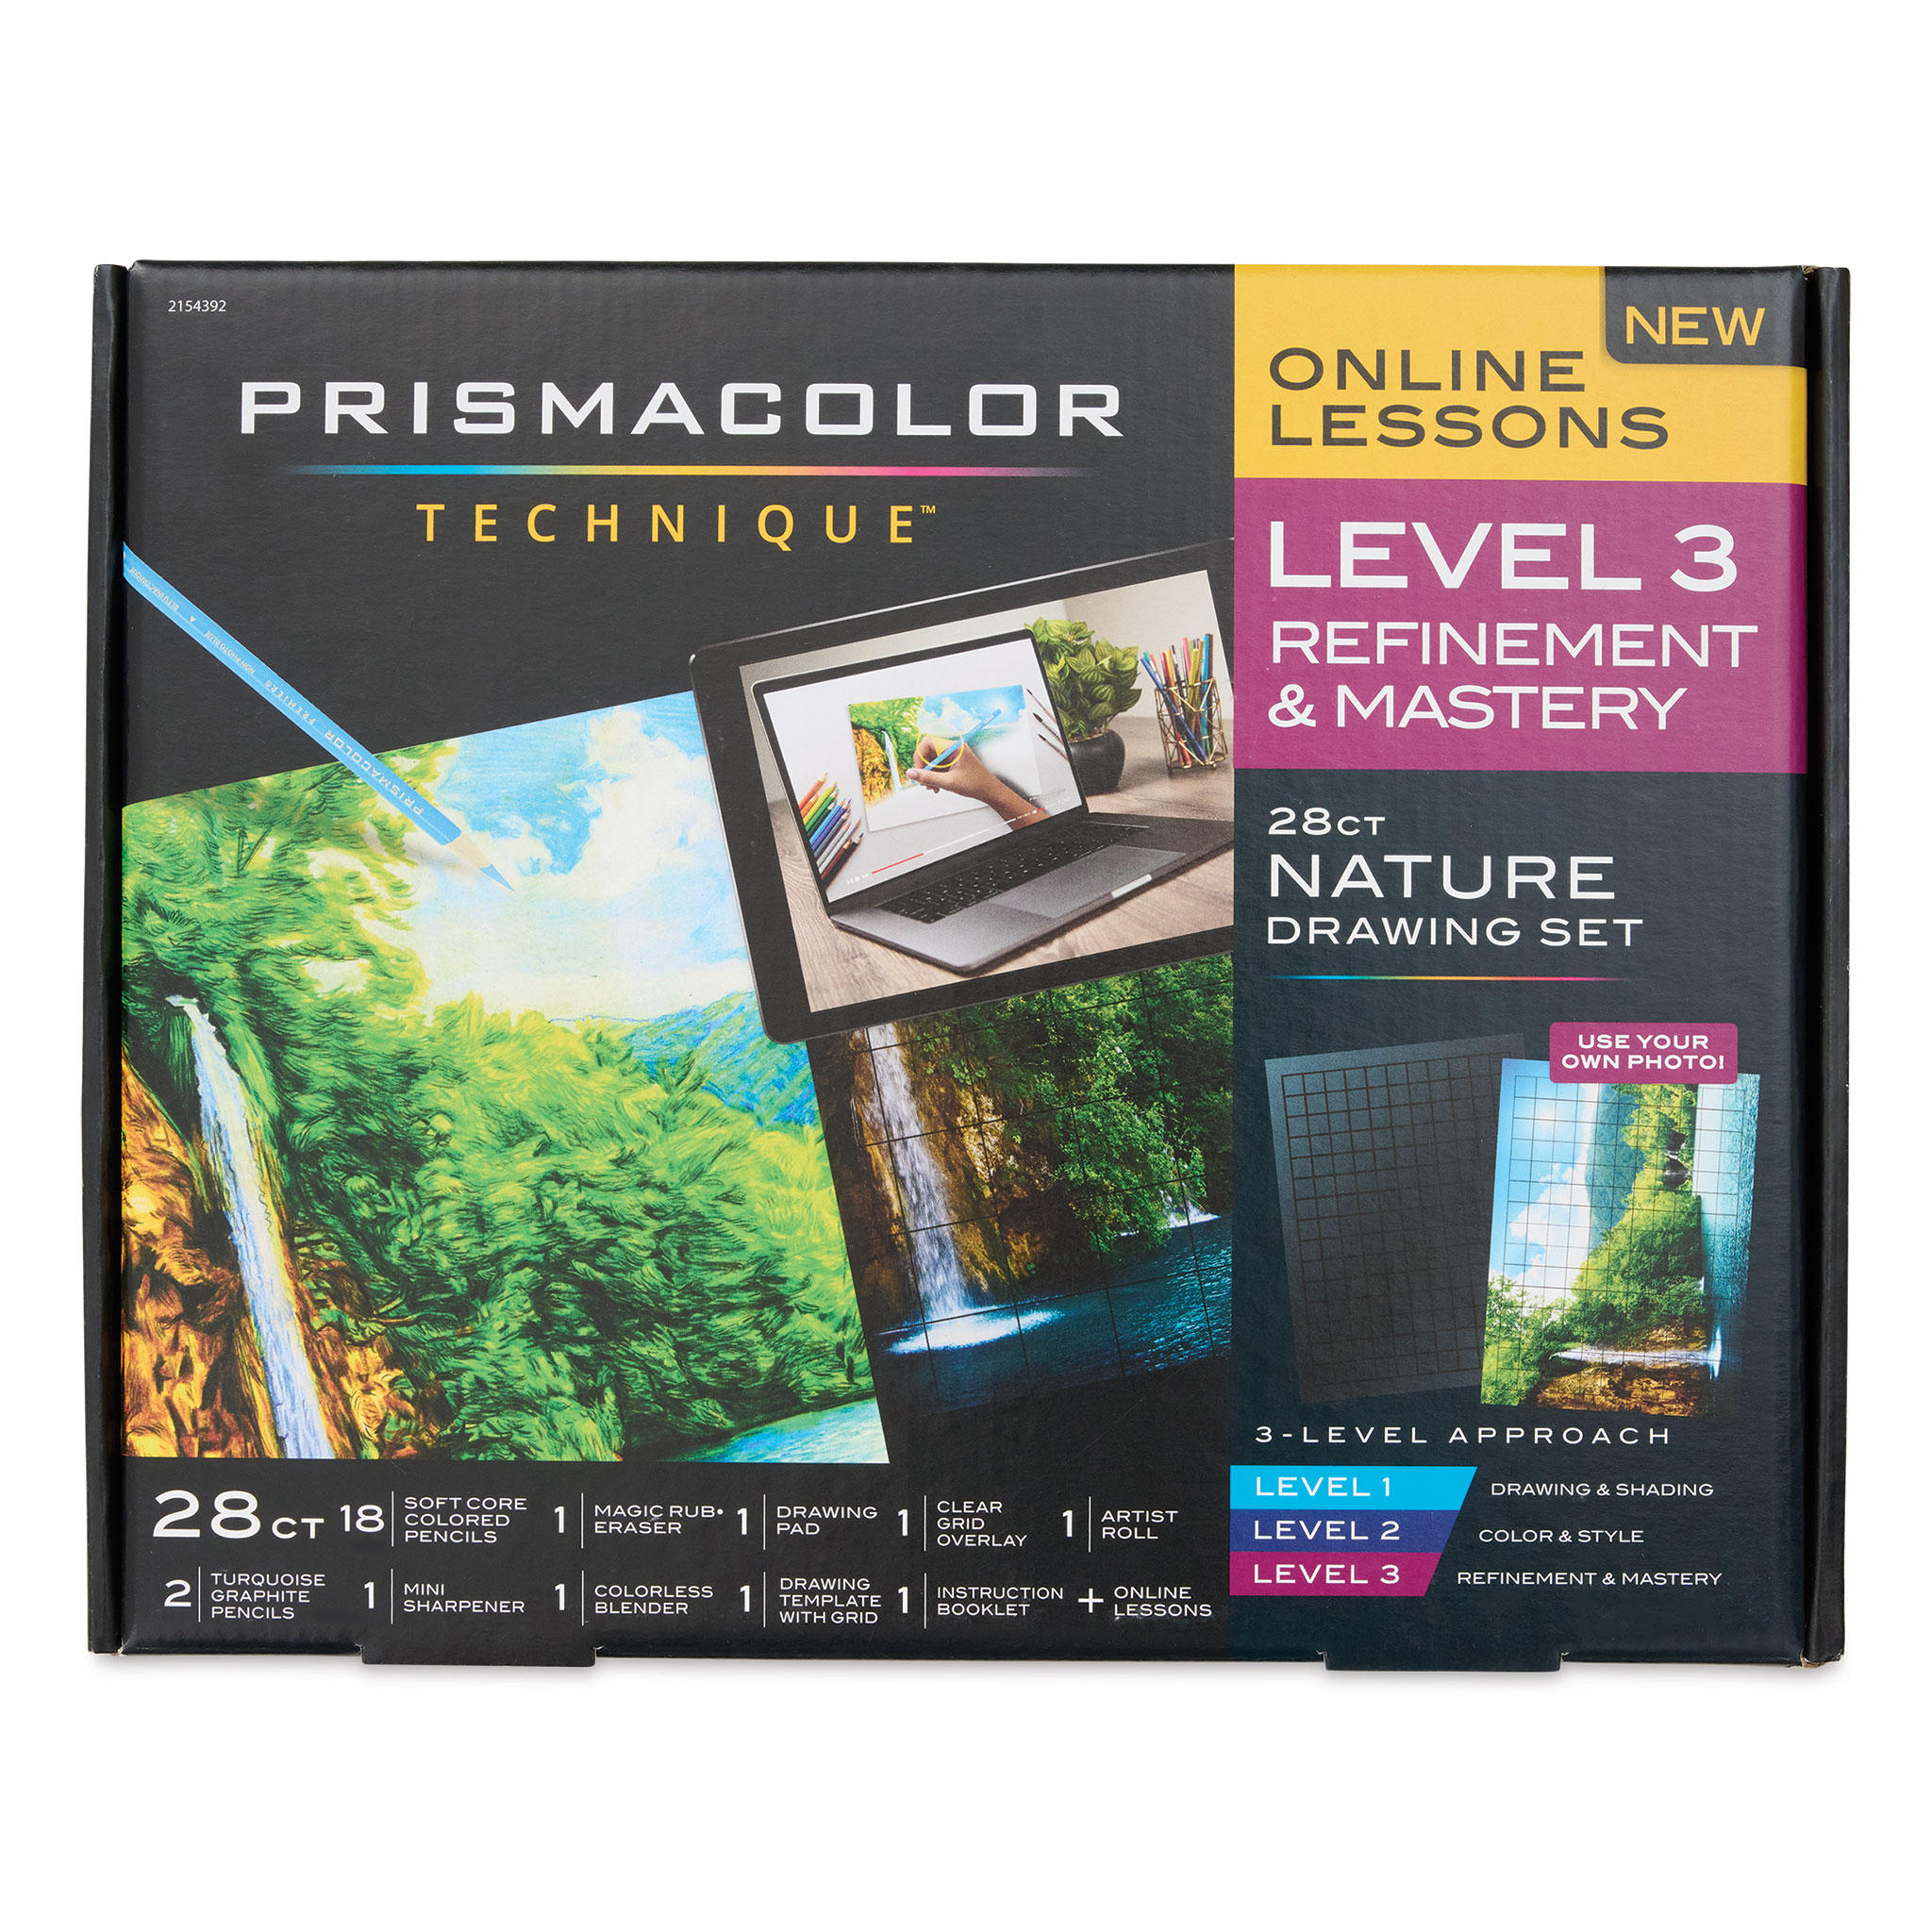 Prismacolor Technique Nature Drawing Set - Level 2, Color & Style